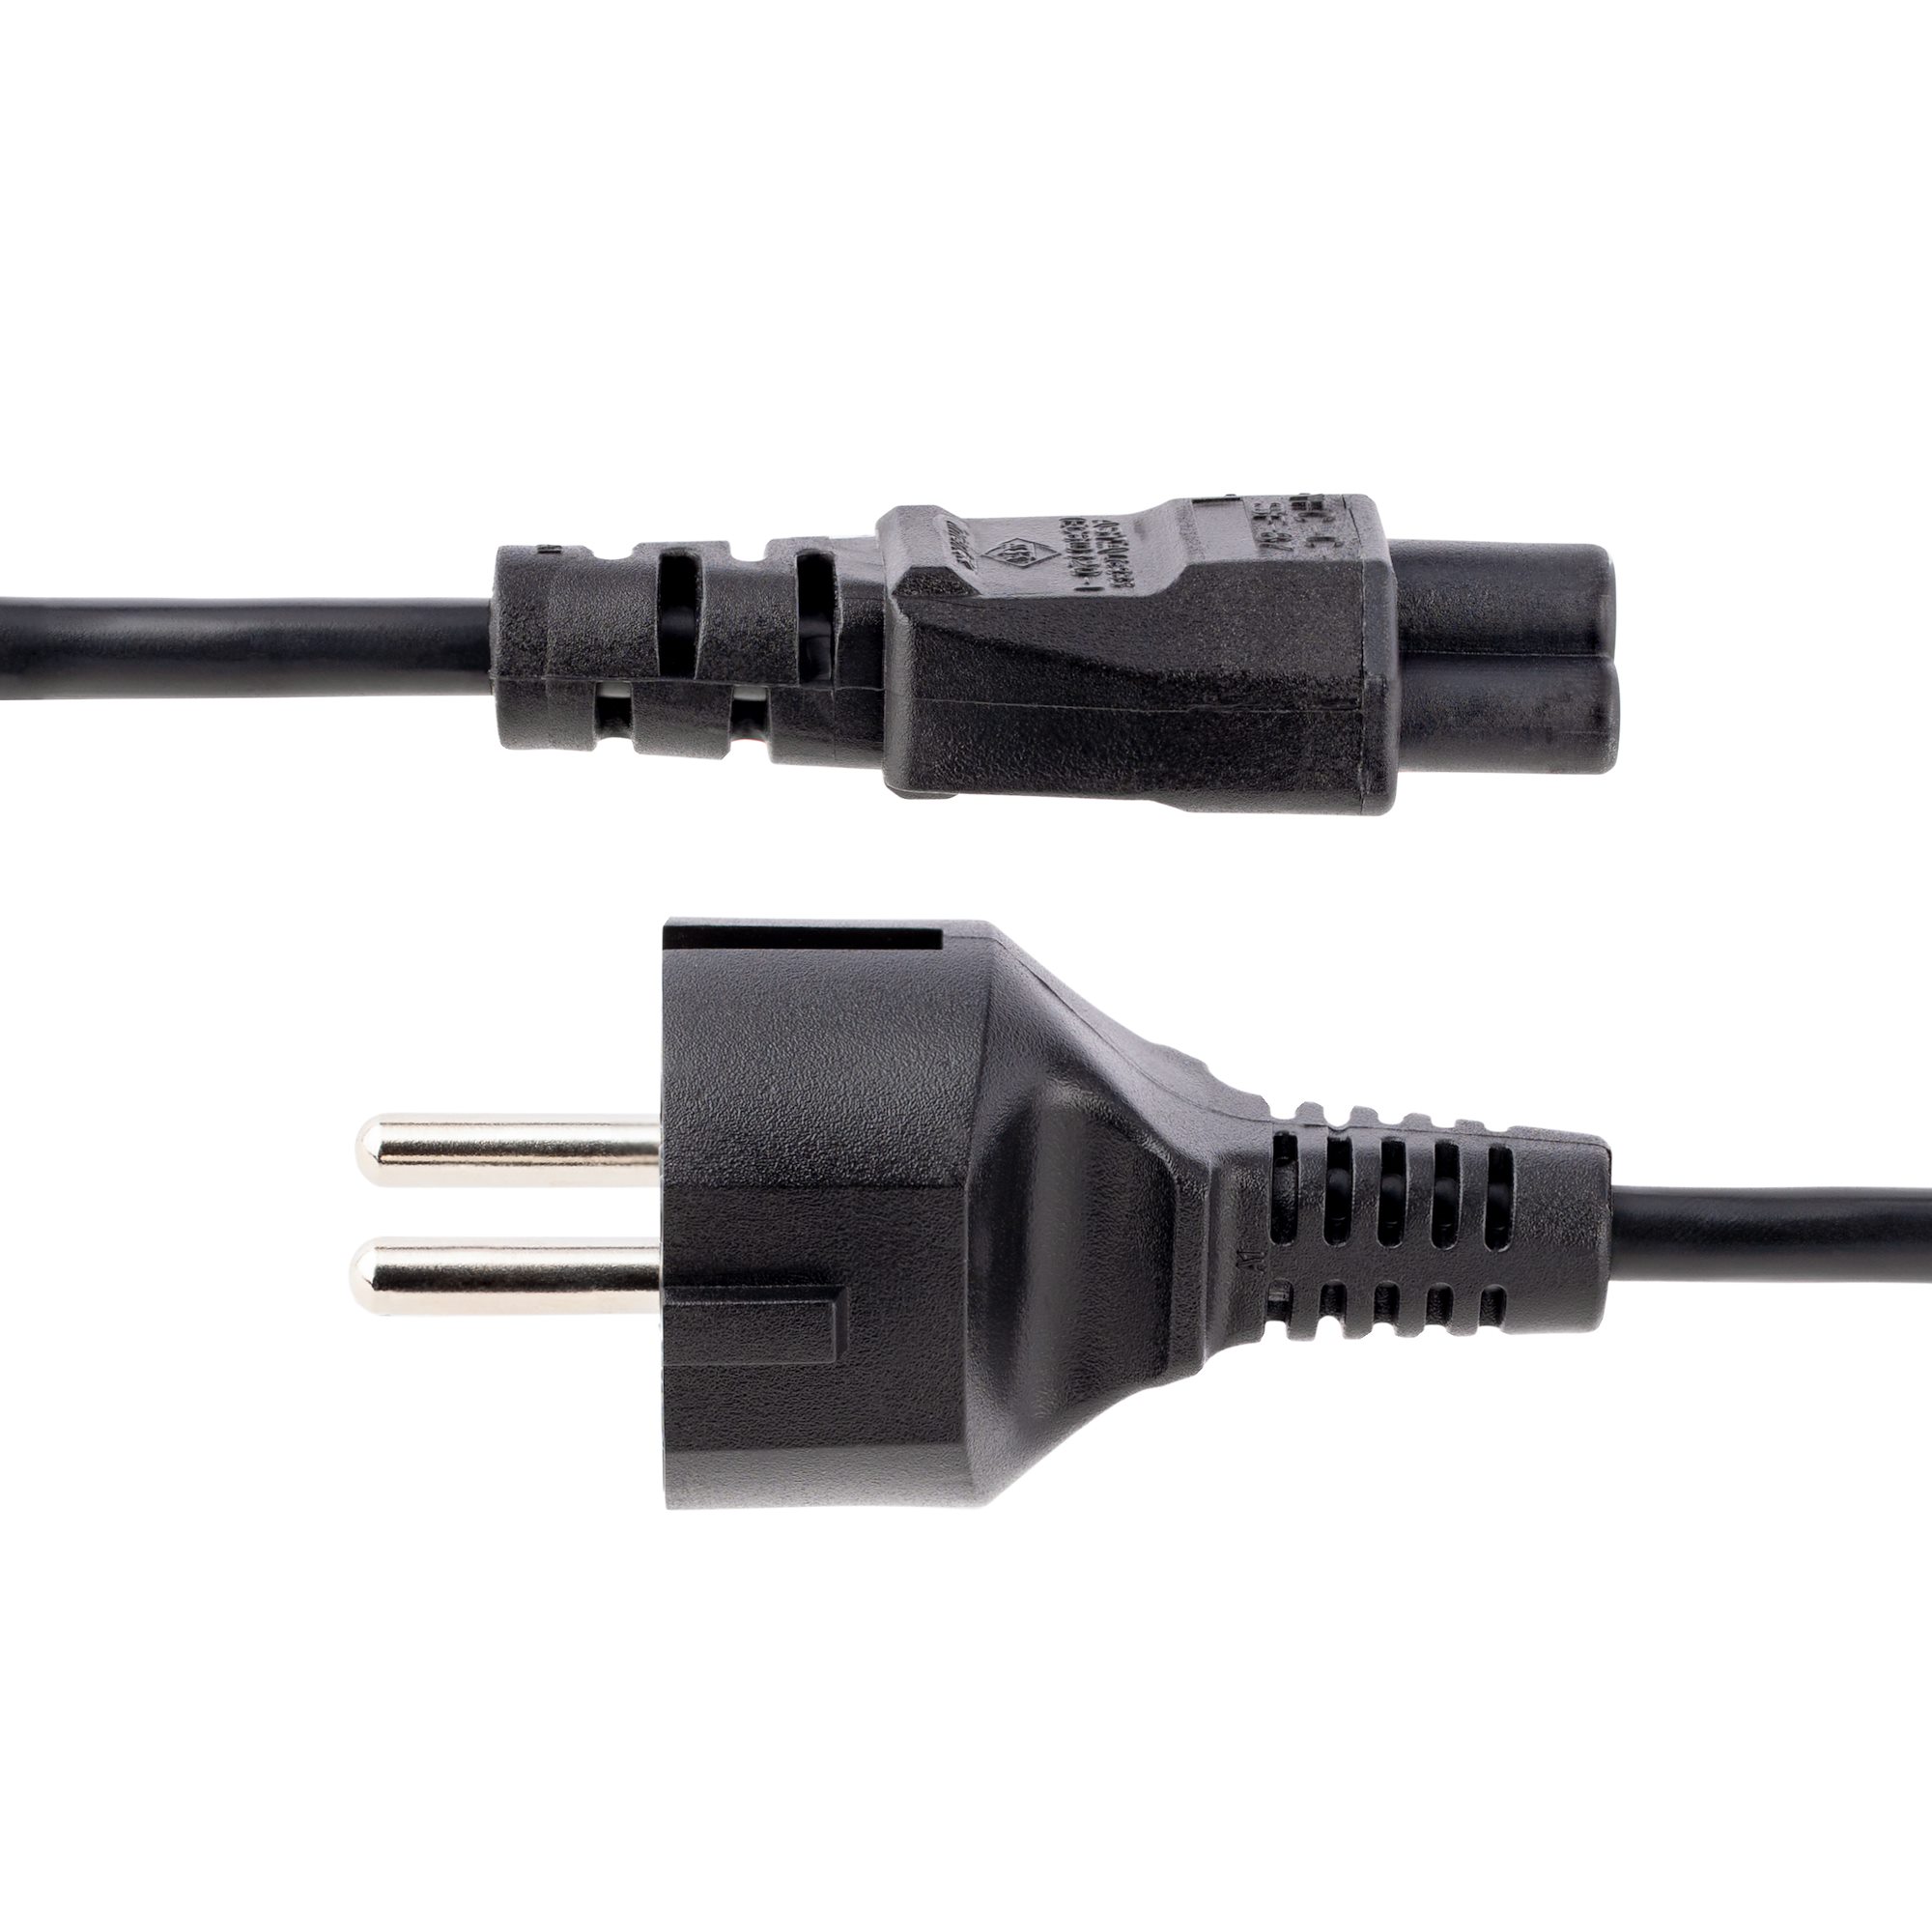 StarTech.com Câble d'Alimentation pour Ordinateur 3m UK - Câble Secteur 3  Broches - IEC 320 C13 à BS-1363 UK Plug Mains Power Cable Lead - Cordon